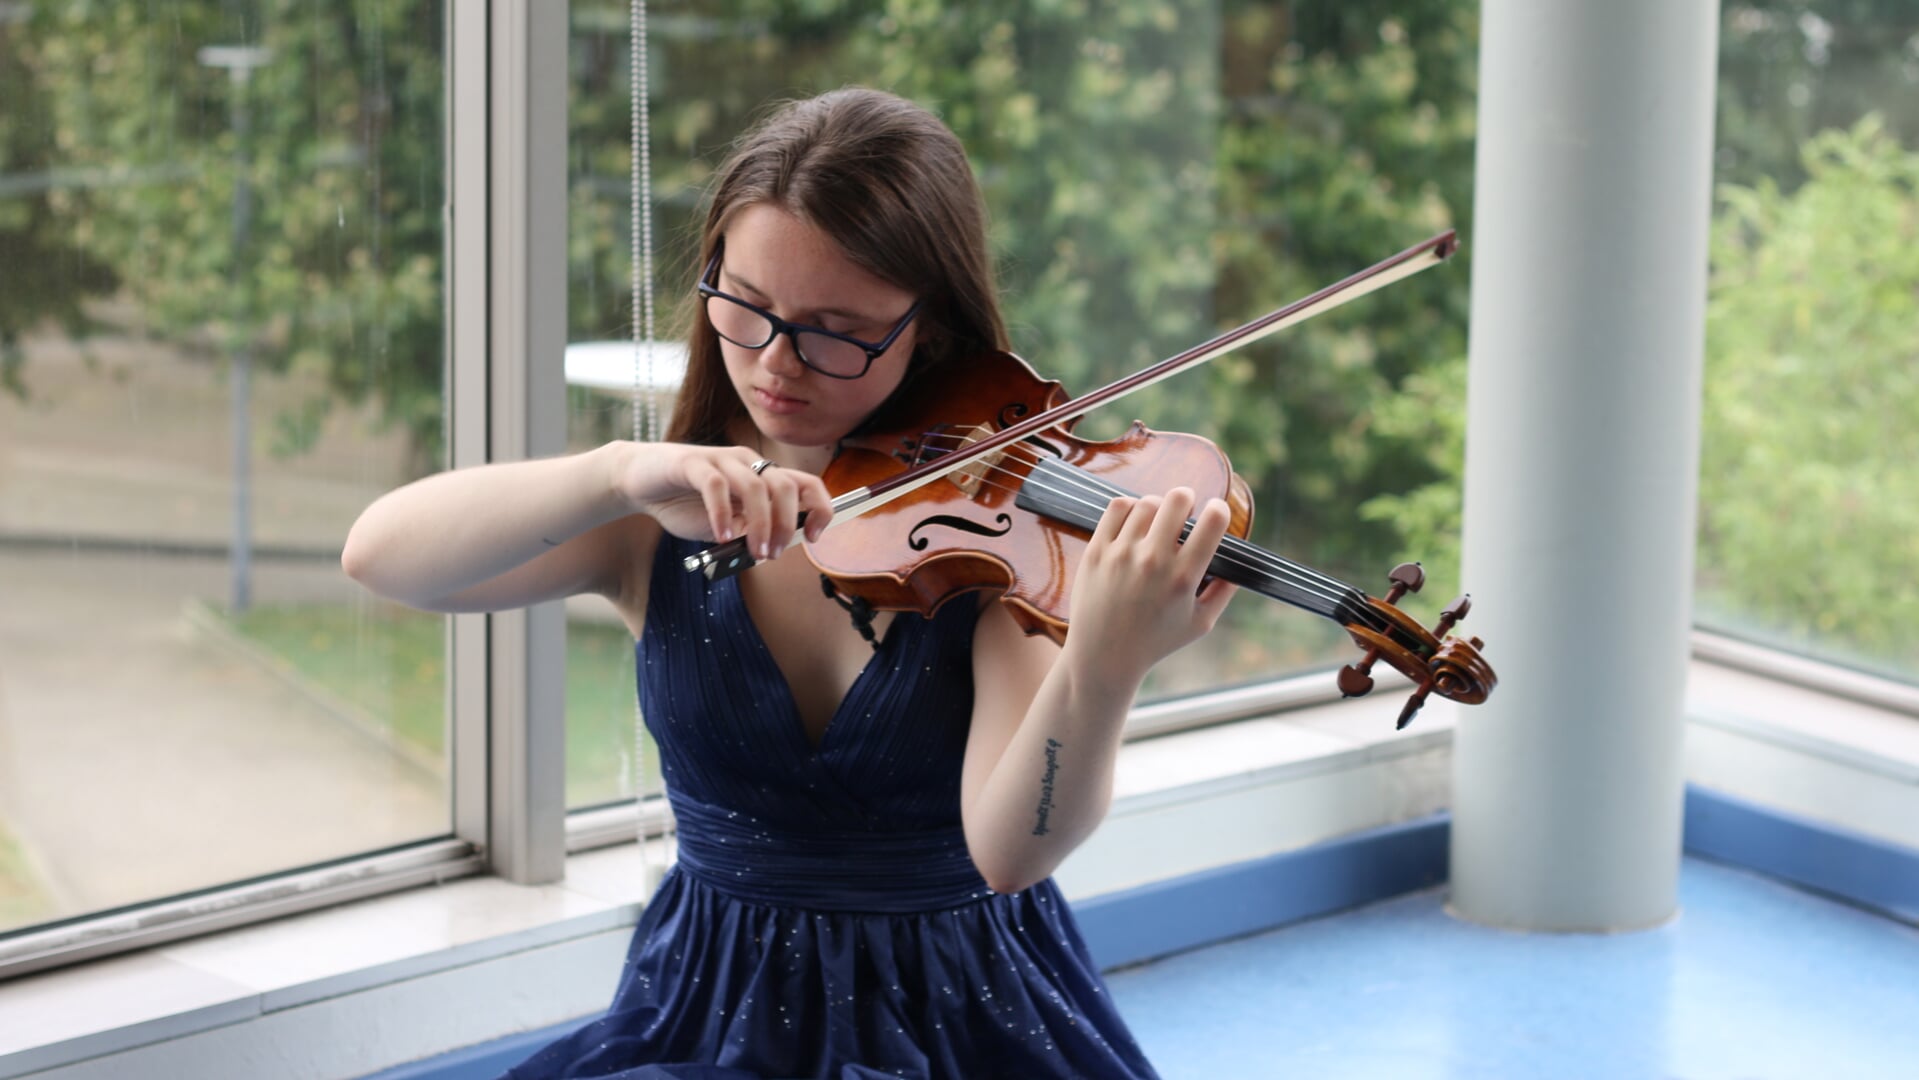 Alba Gonzáles Blanco begon haar vioolstudie op 9-jarige leeftijd.